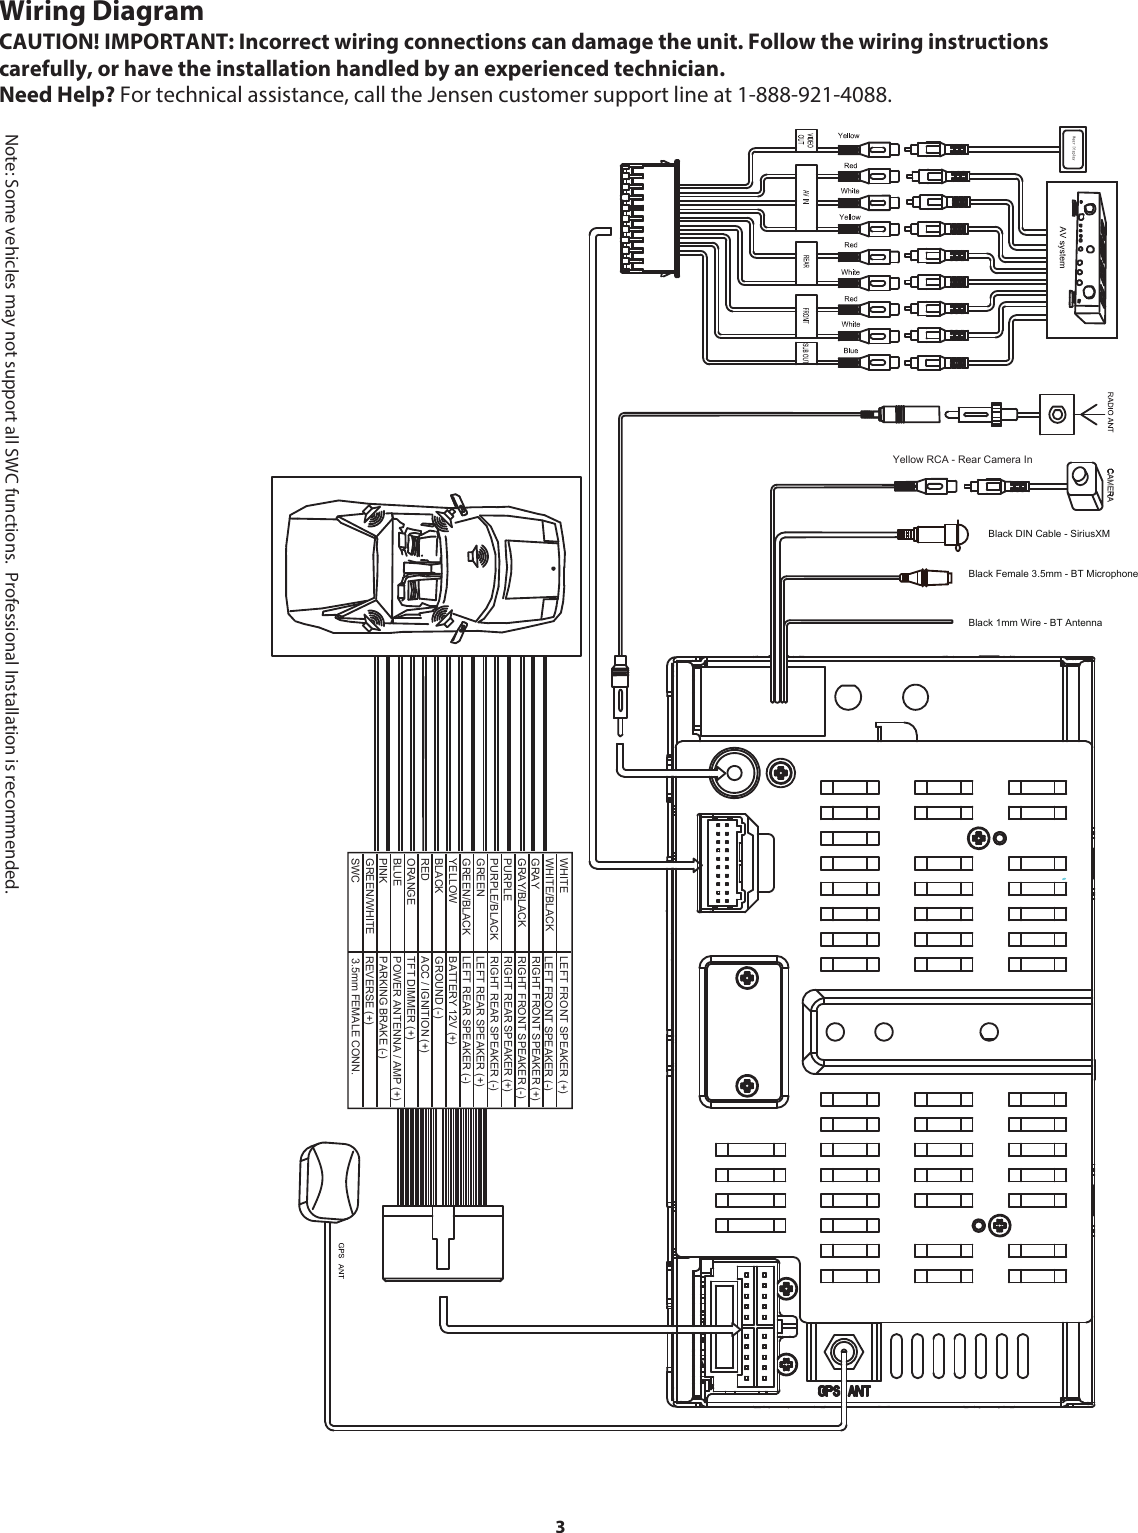 Jensen Vx7020 Wiring Diagram - Wiring Schema